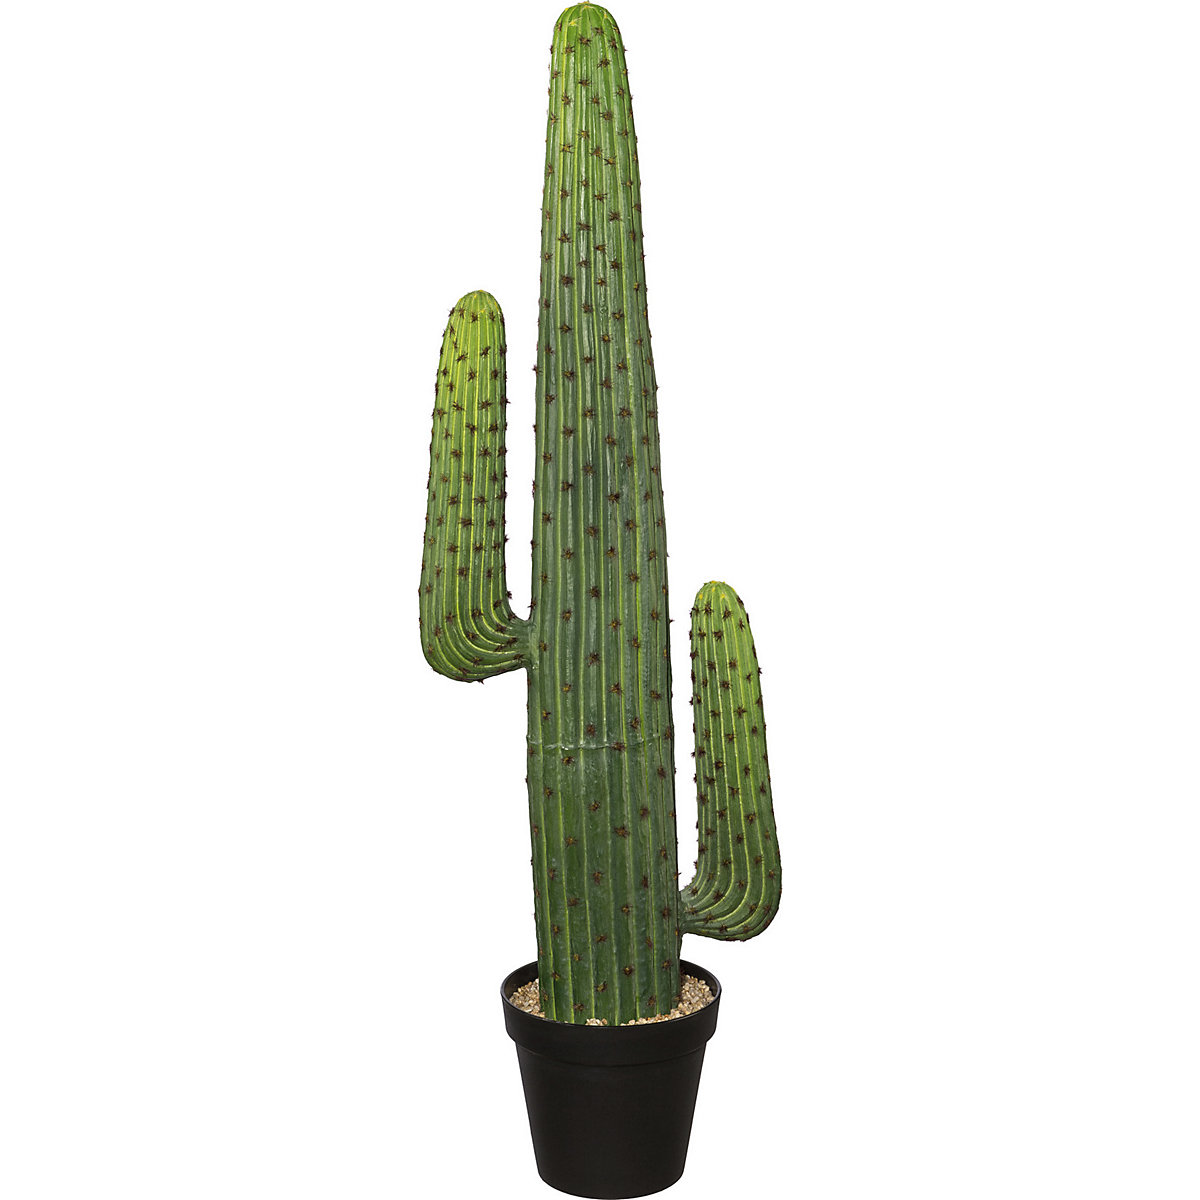 Mexico-cactus